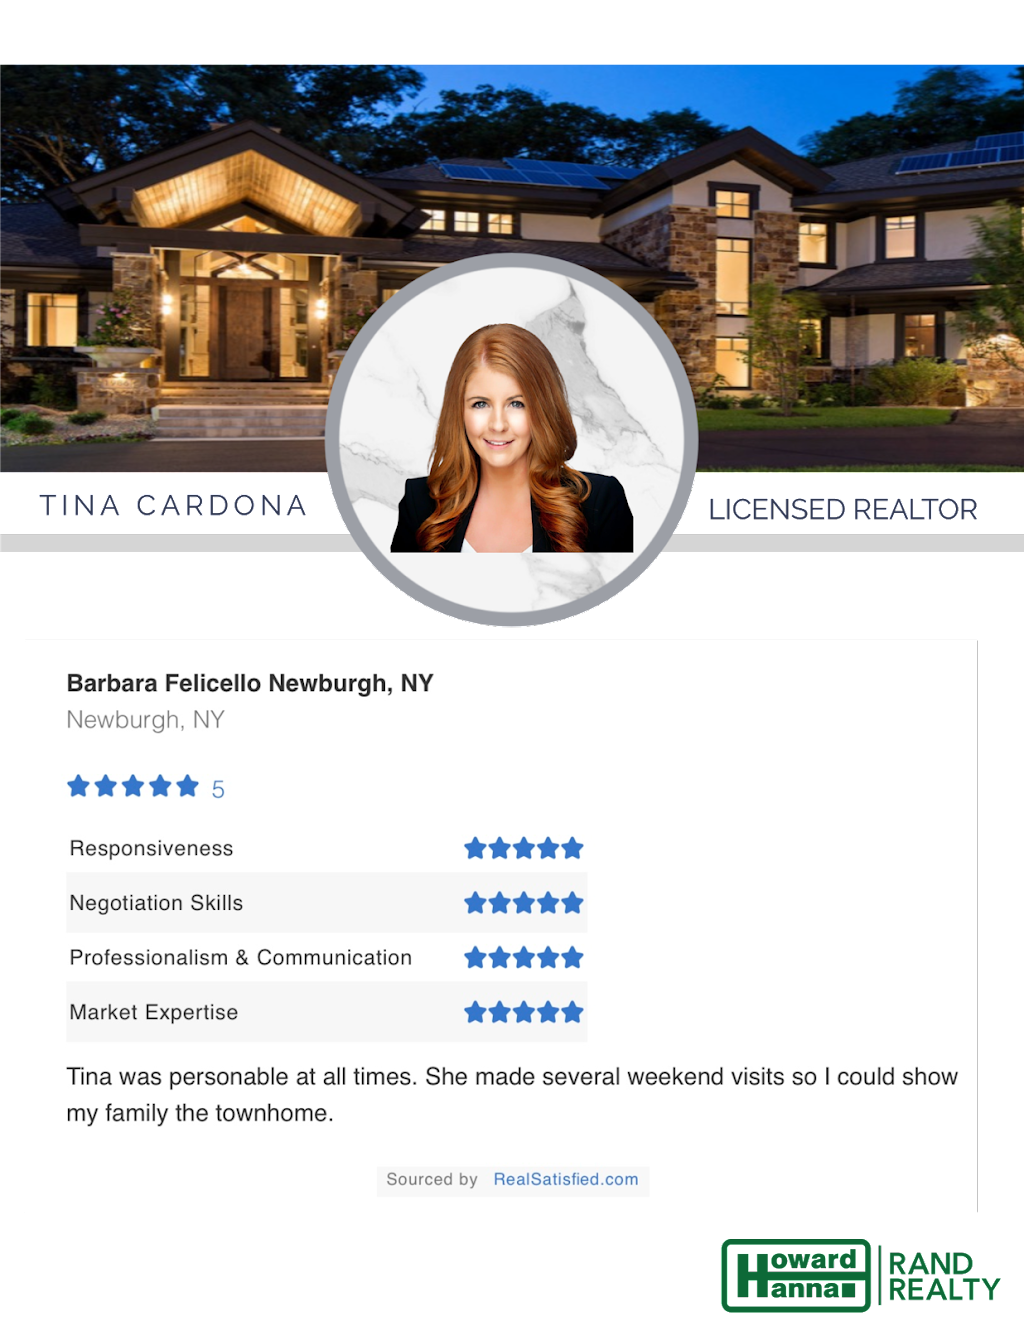 Tina Cardona Real Estate - Howard Hanna Rand Realty | 229 NY-32, Central Valley, NY 10917 | Phone: (347) 335-5208